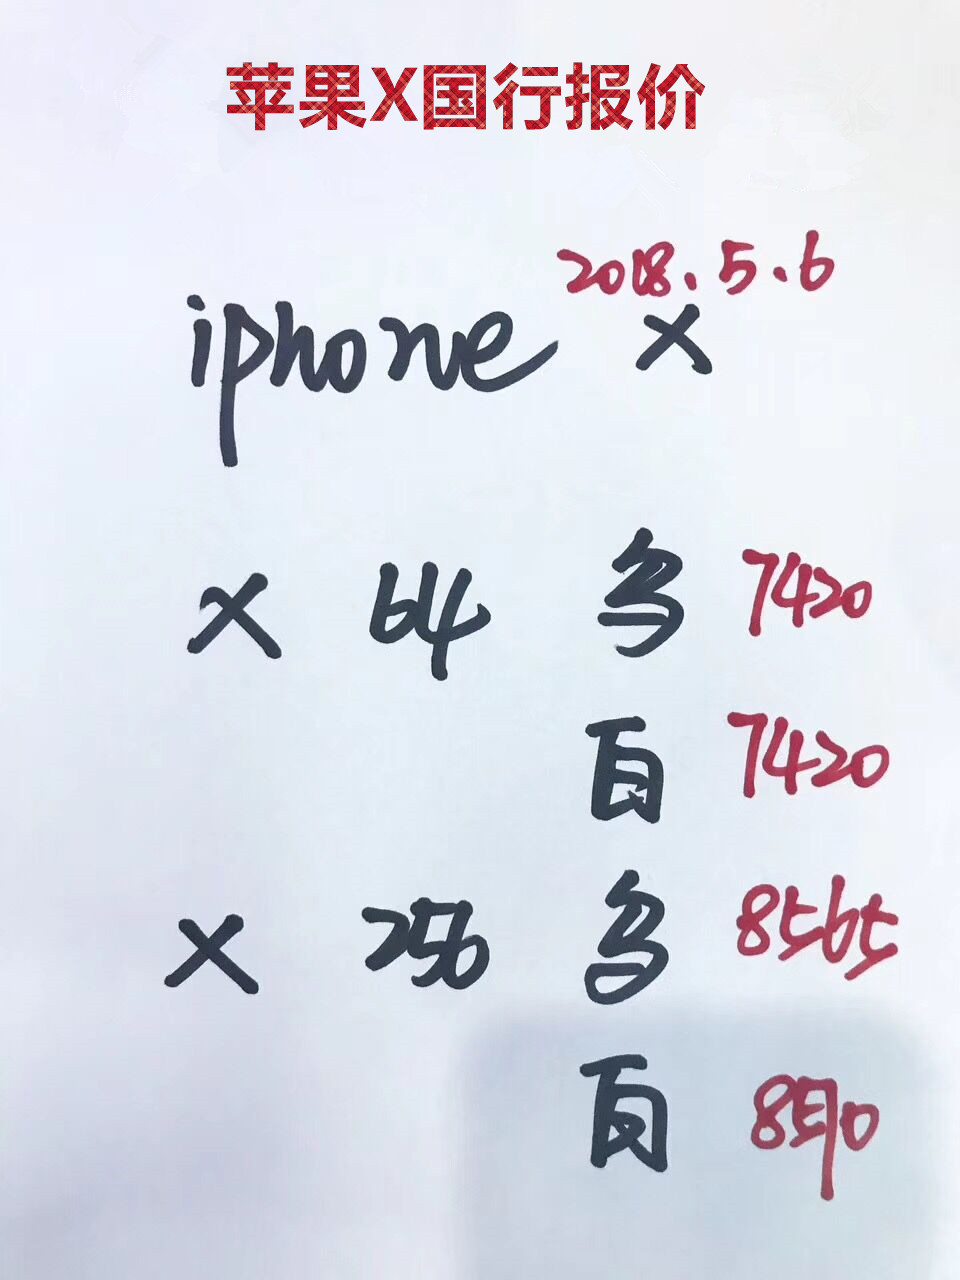 苹果X国行报价.jpg